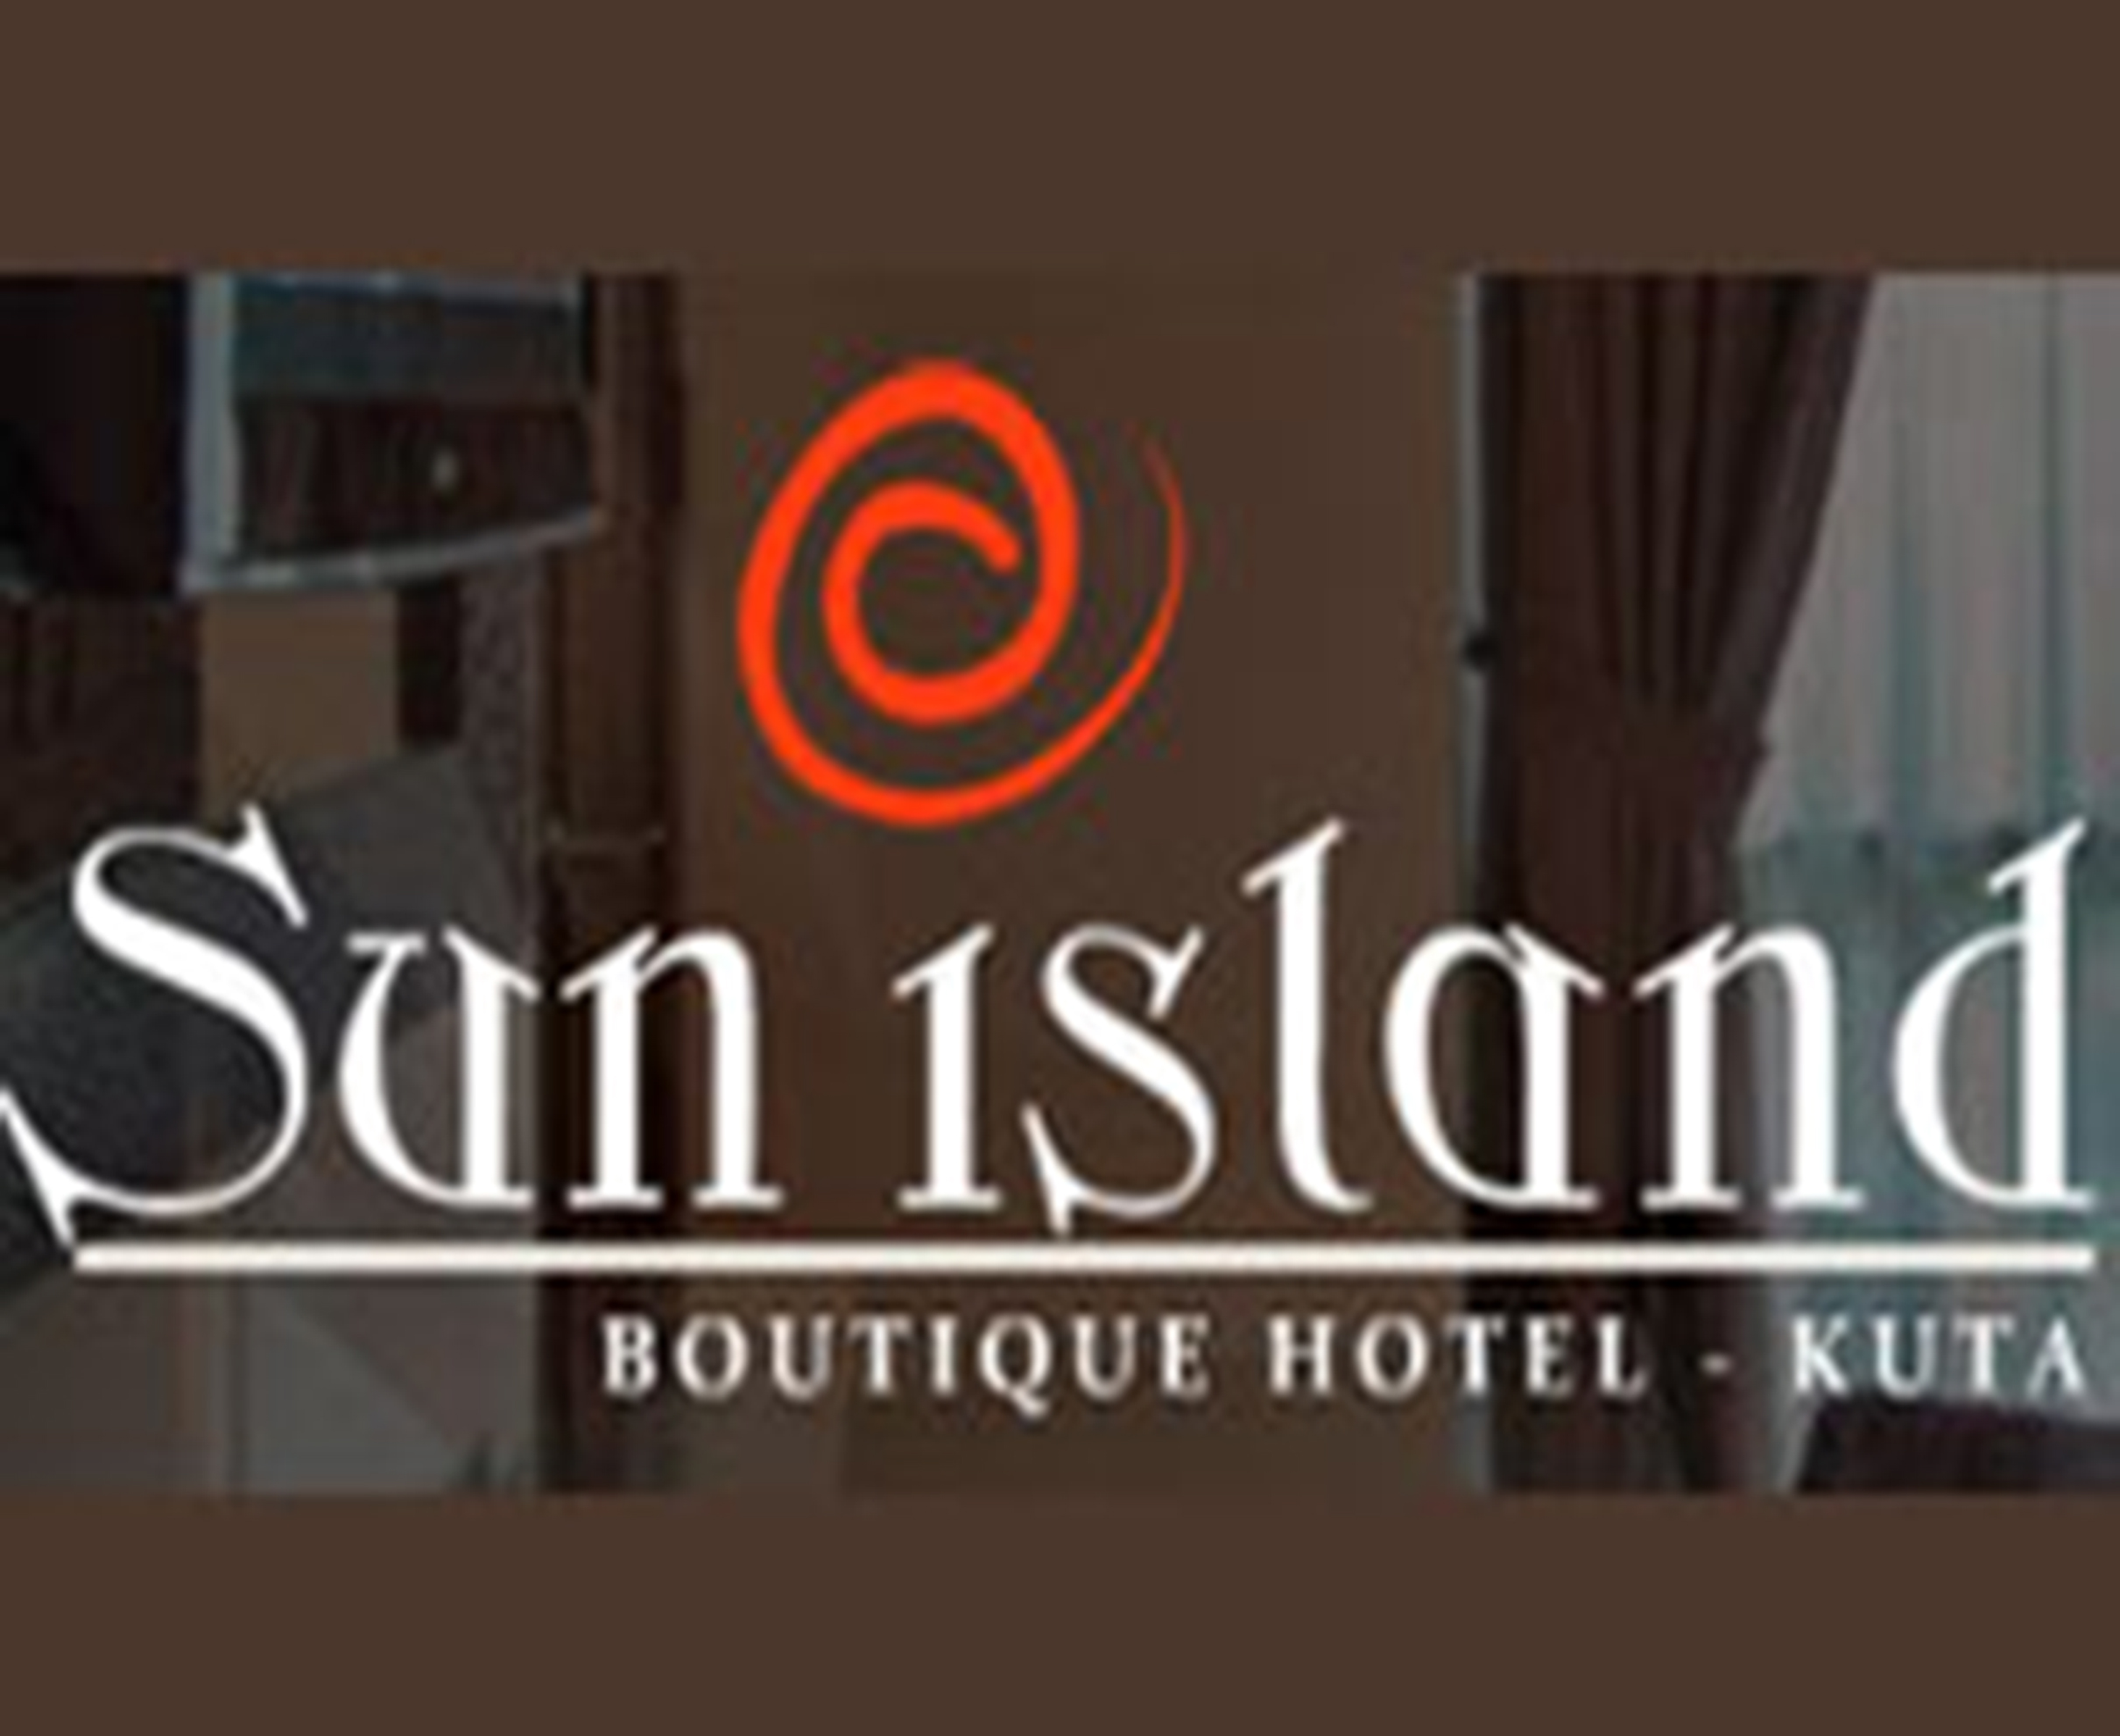 
Sun Island Hotel